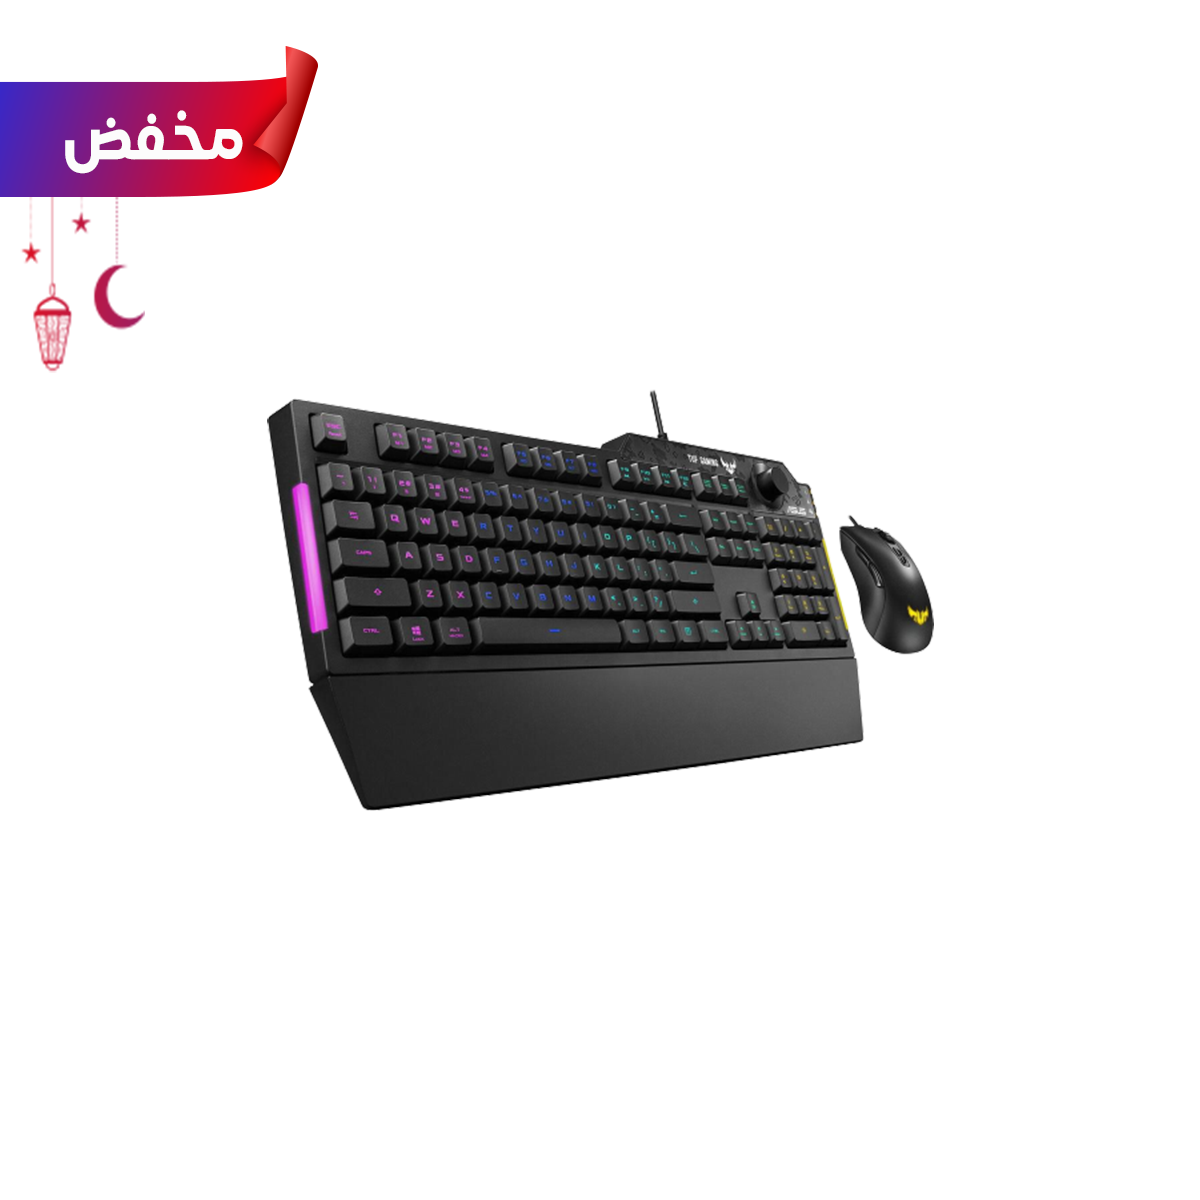 ASUS TUF Gaming K1 RGB keyboard plus TUF Gaming M3 optical gaming mouse